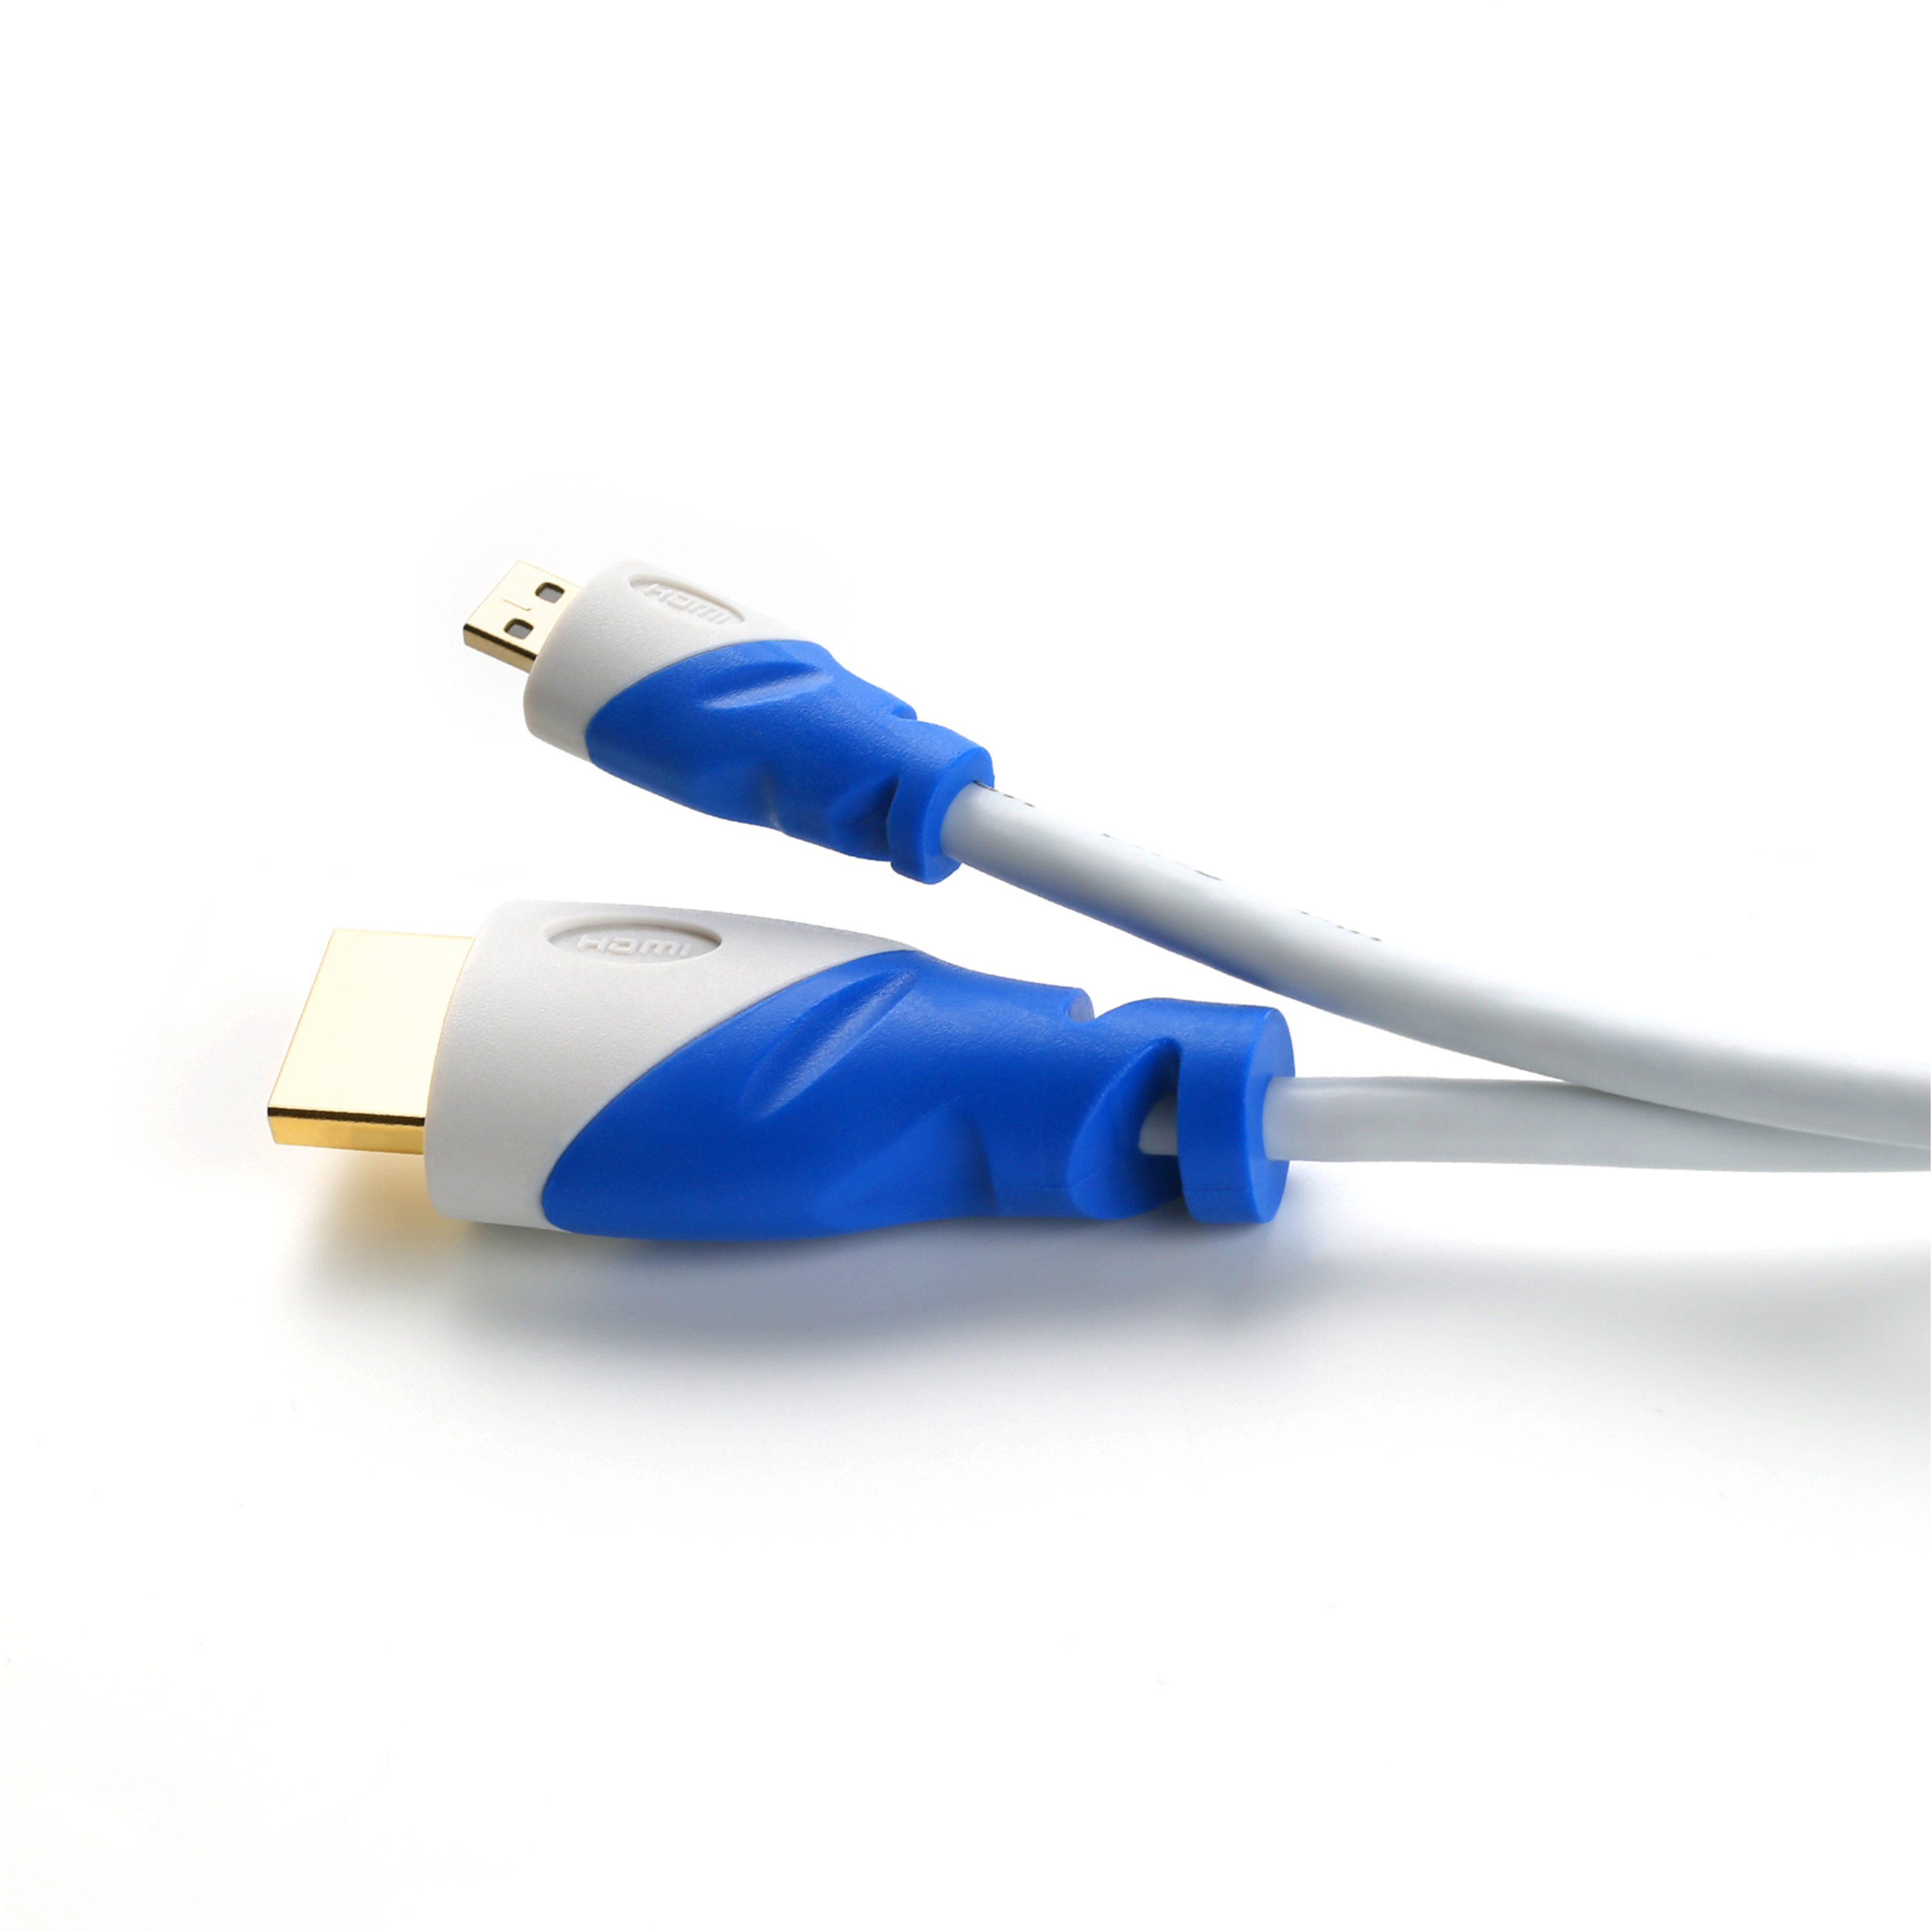 CSL HDMI Kabel, 2m Kabel, HDMI 2.0 gewinkelt, weiß/blau